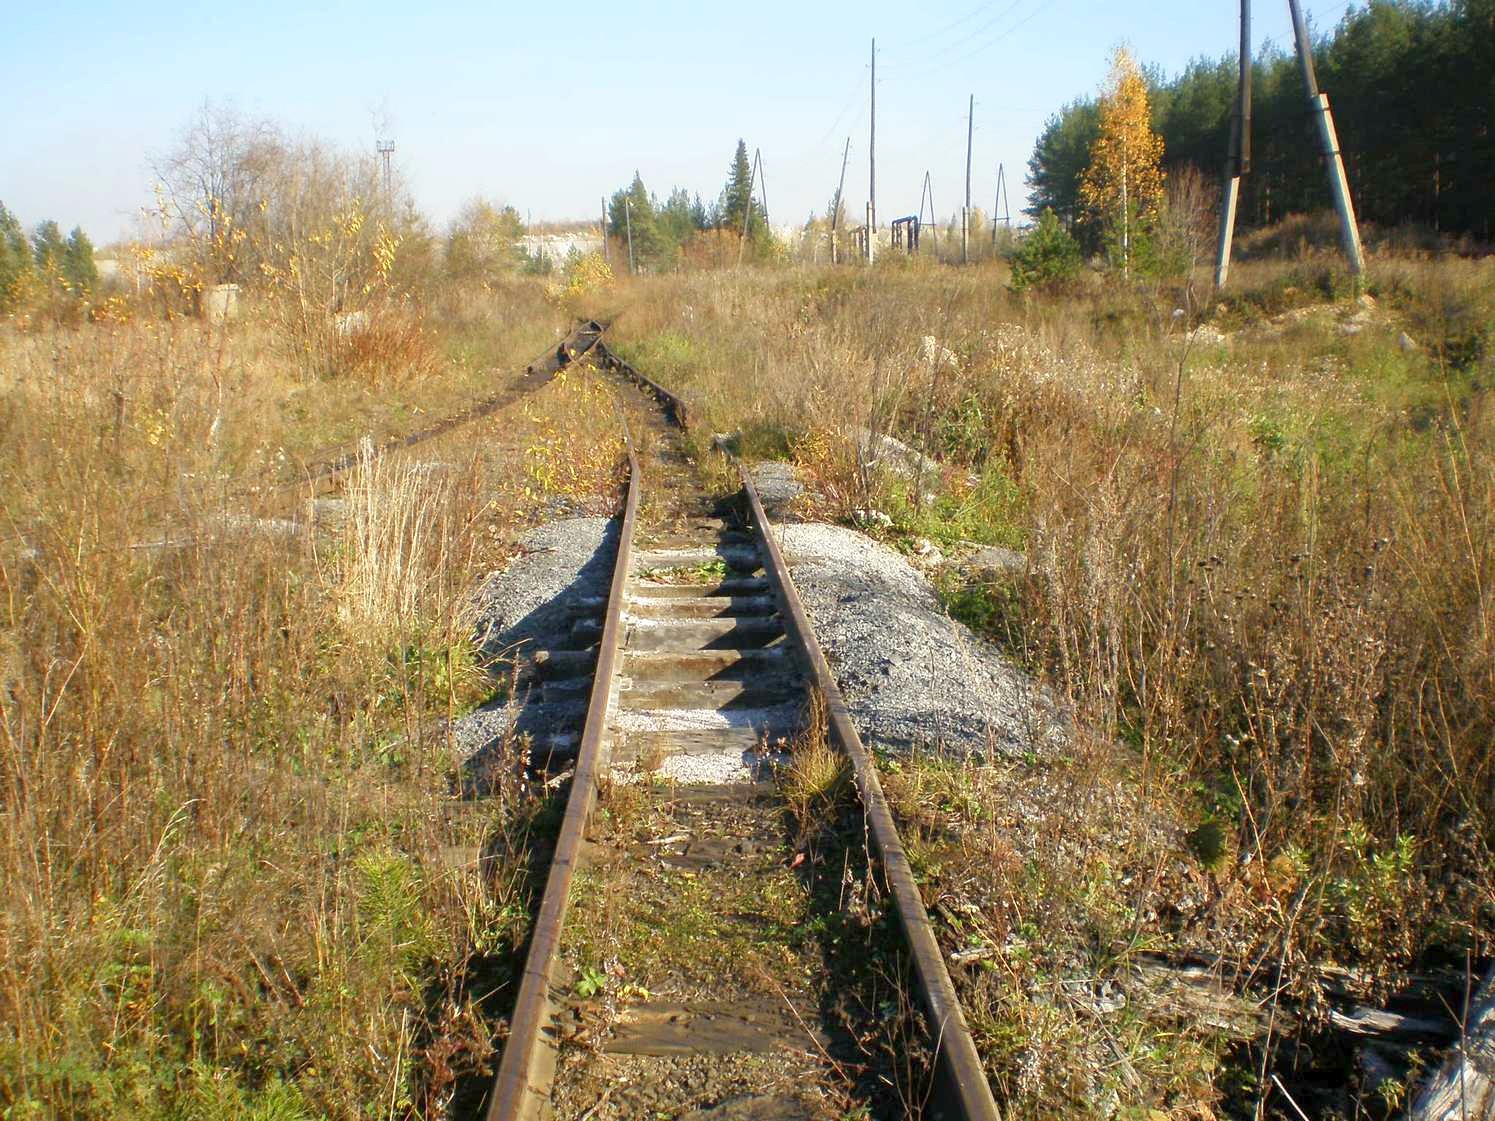 Висимо-Уткинская узкоколейная железная дорога  — фотографии, сделанные в 2007 году (часть 32)